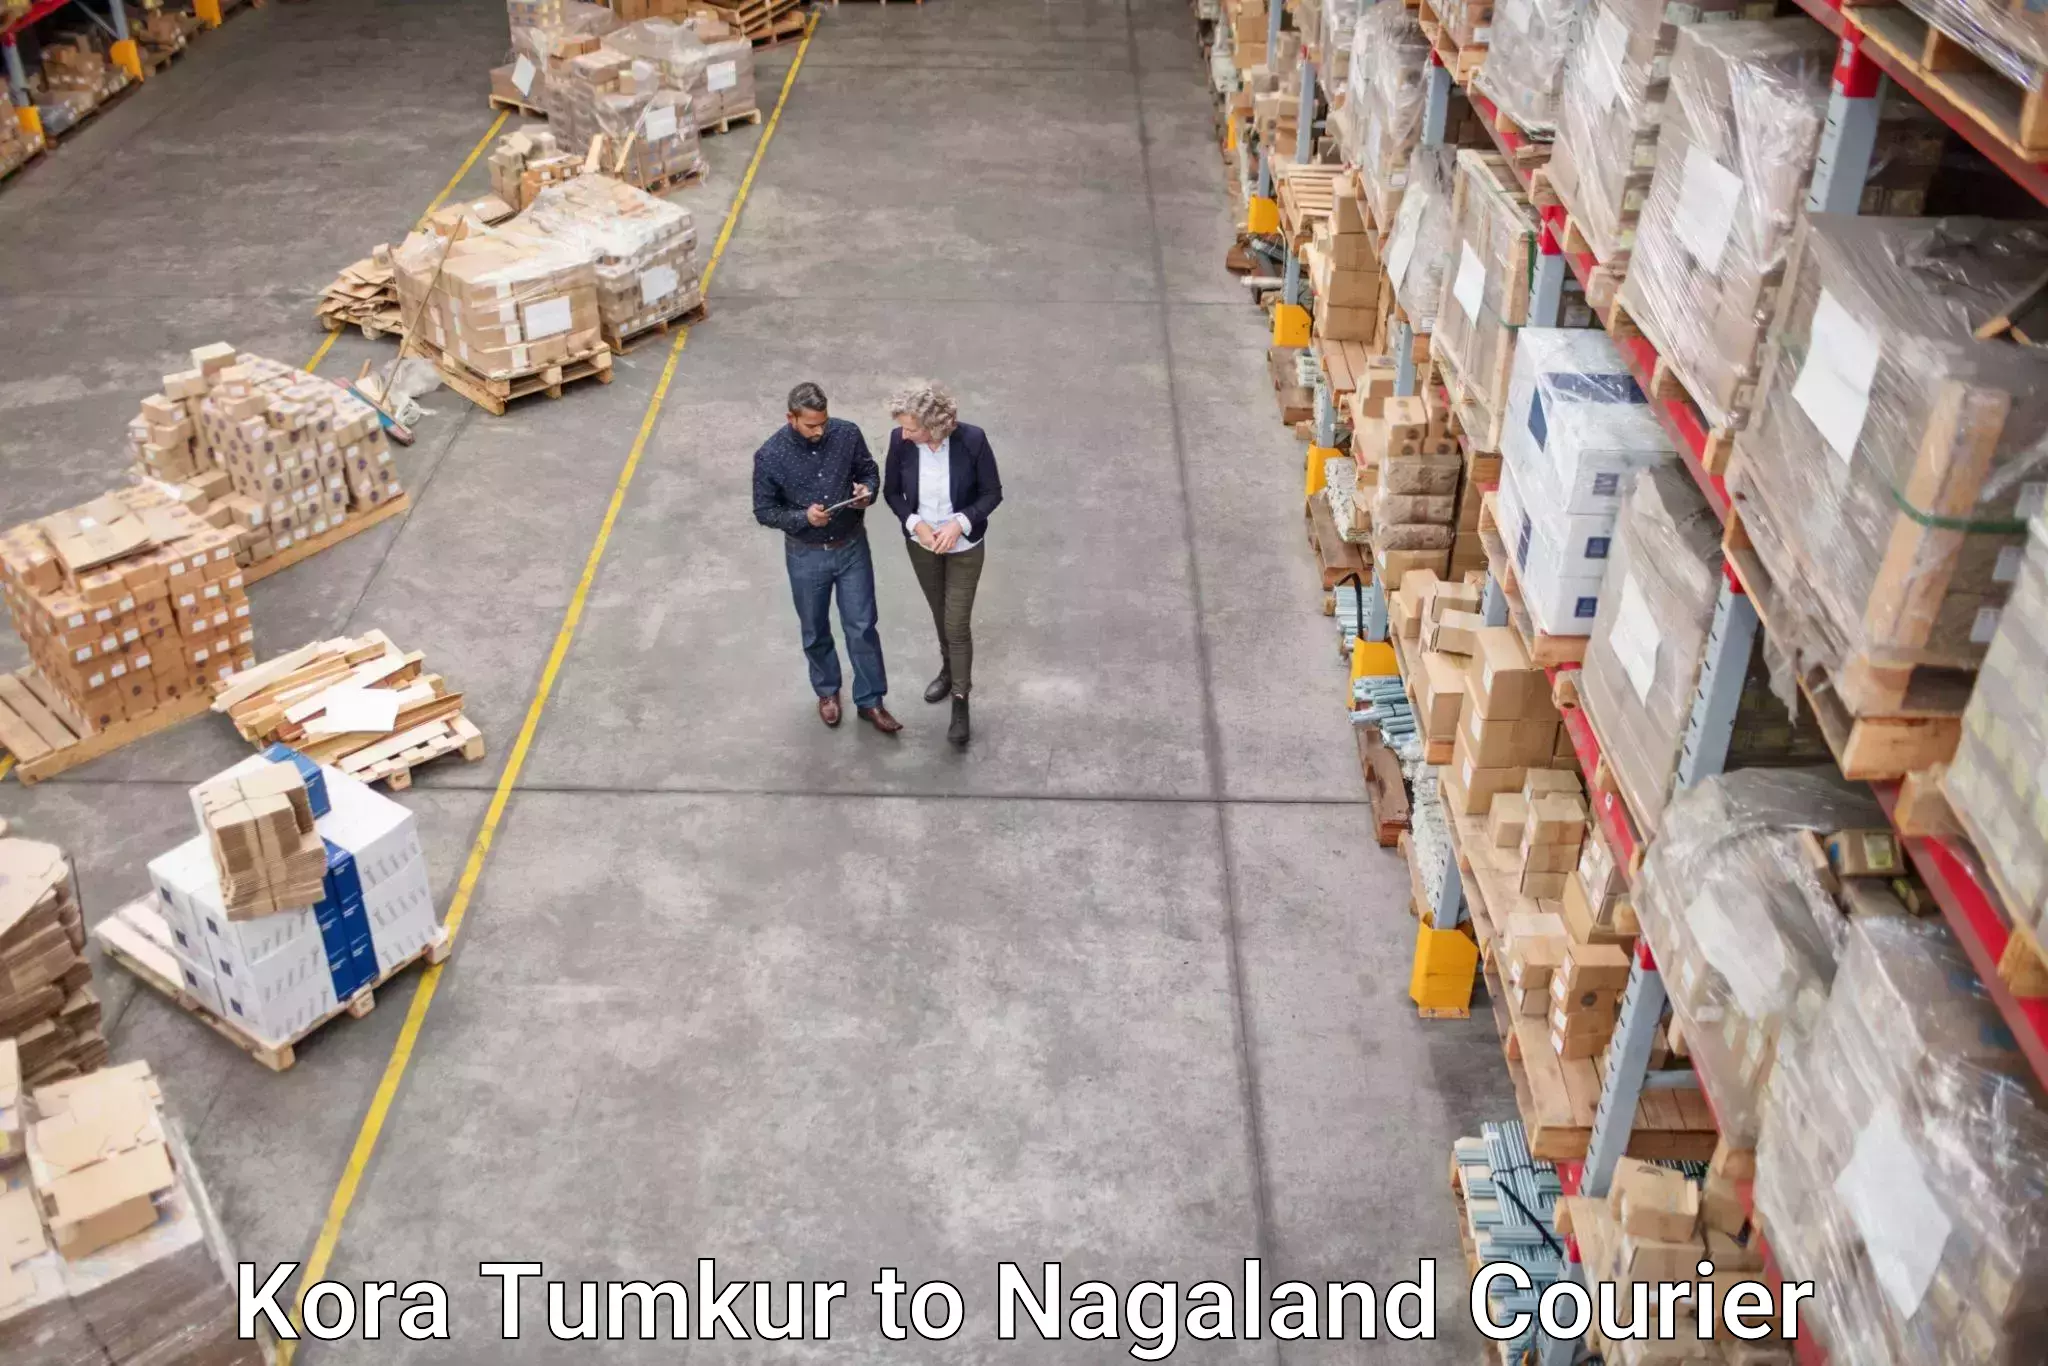 Flexible parcel services Kora Tumkur to Wokha